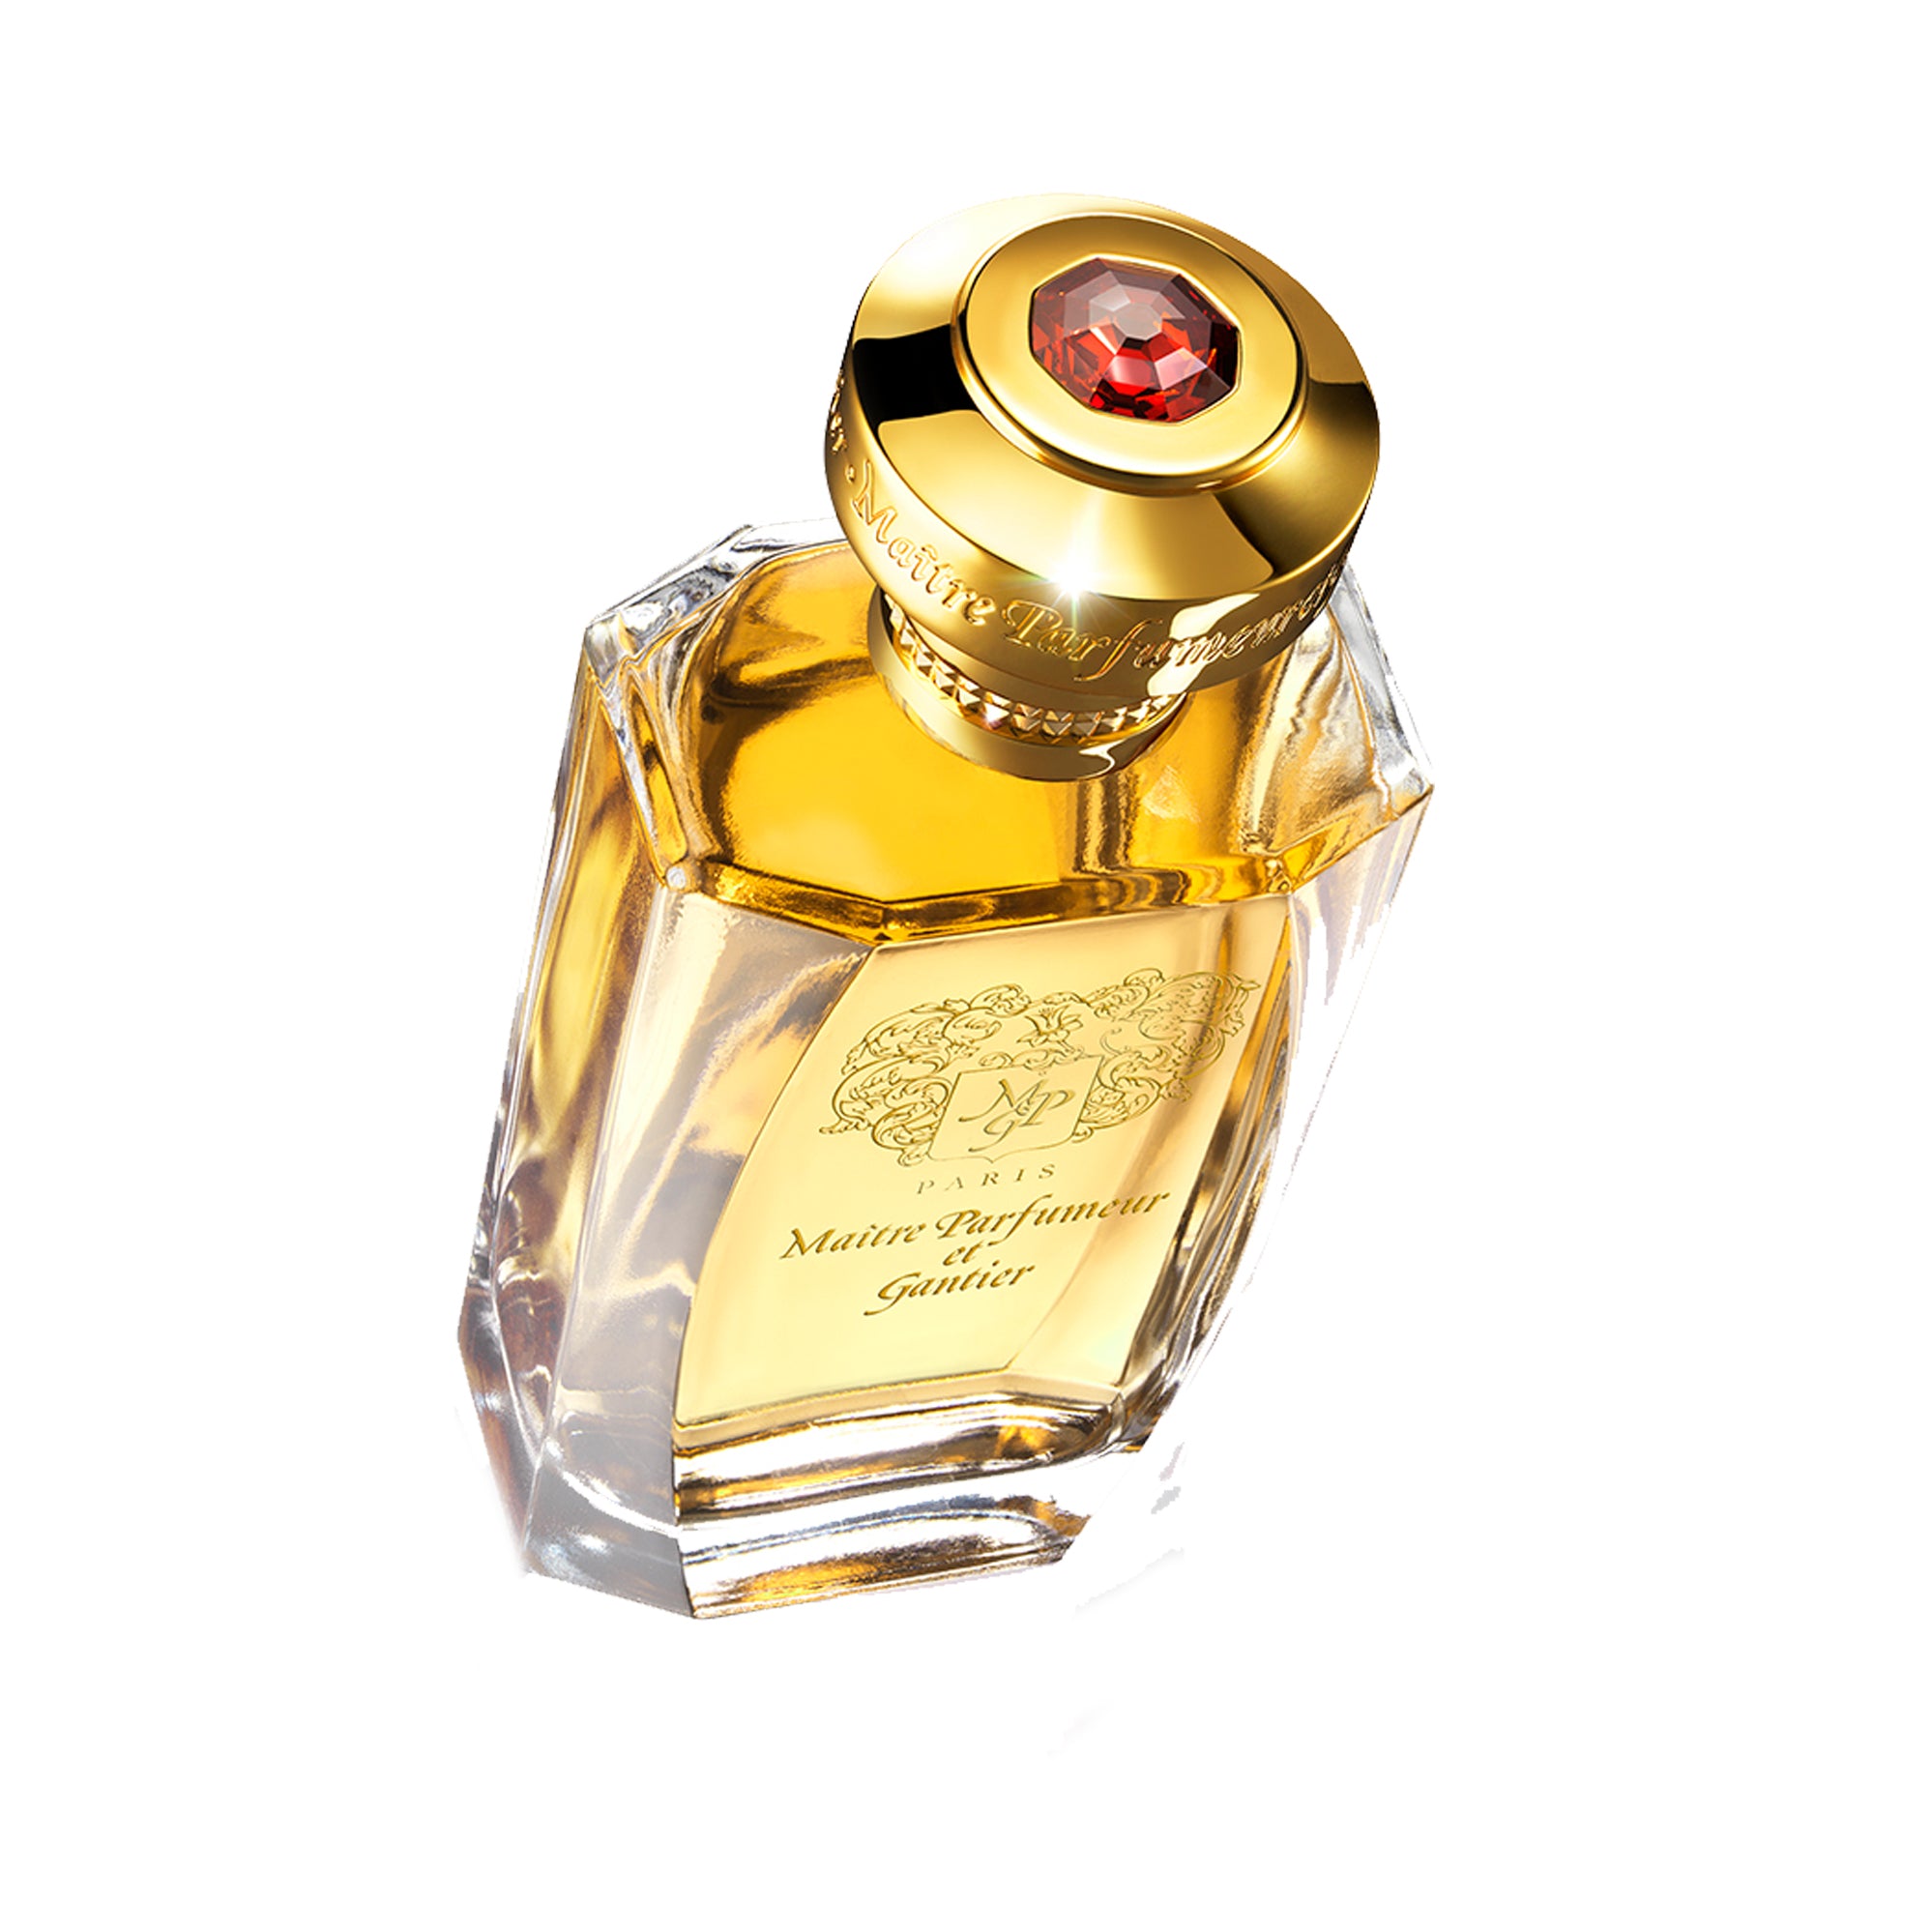 Cuir Fetiche Eau de Parfum 120ml by Maître Parfumeur et Gantier